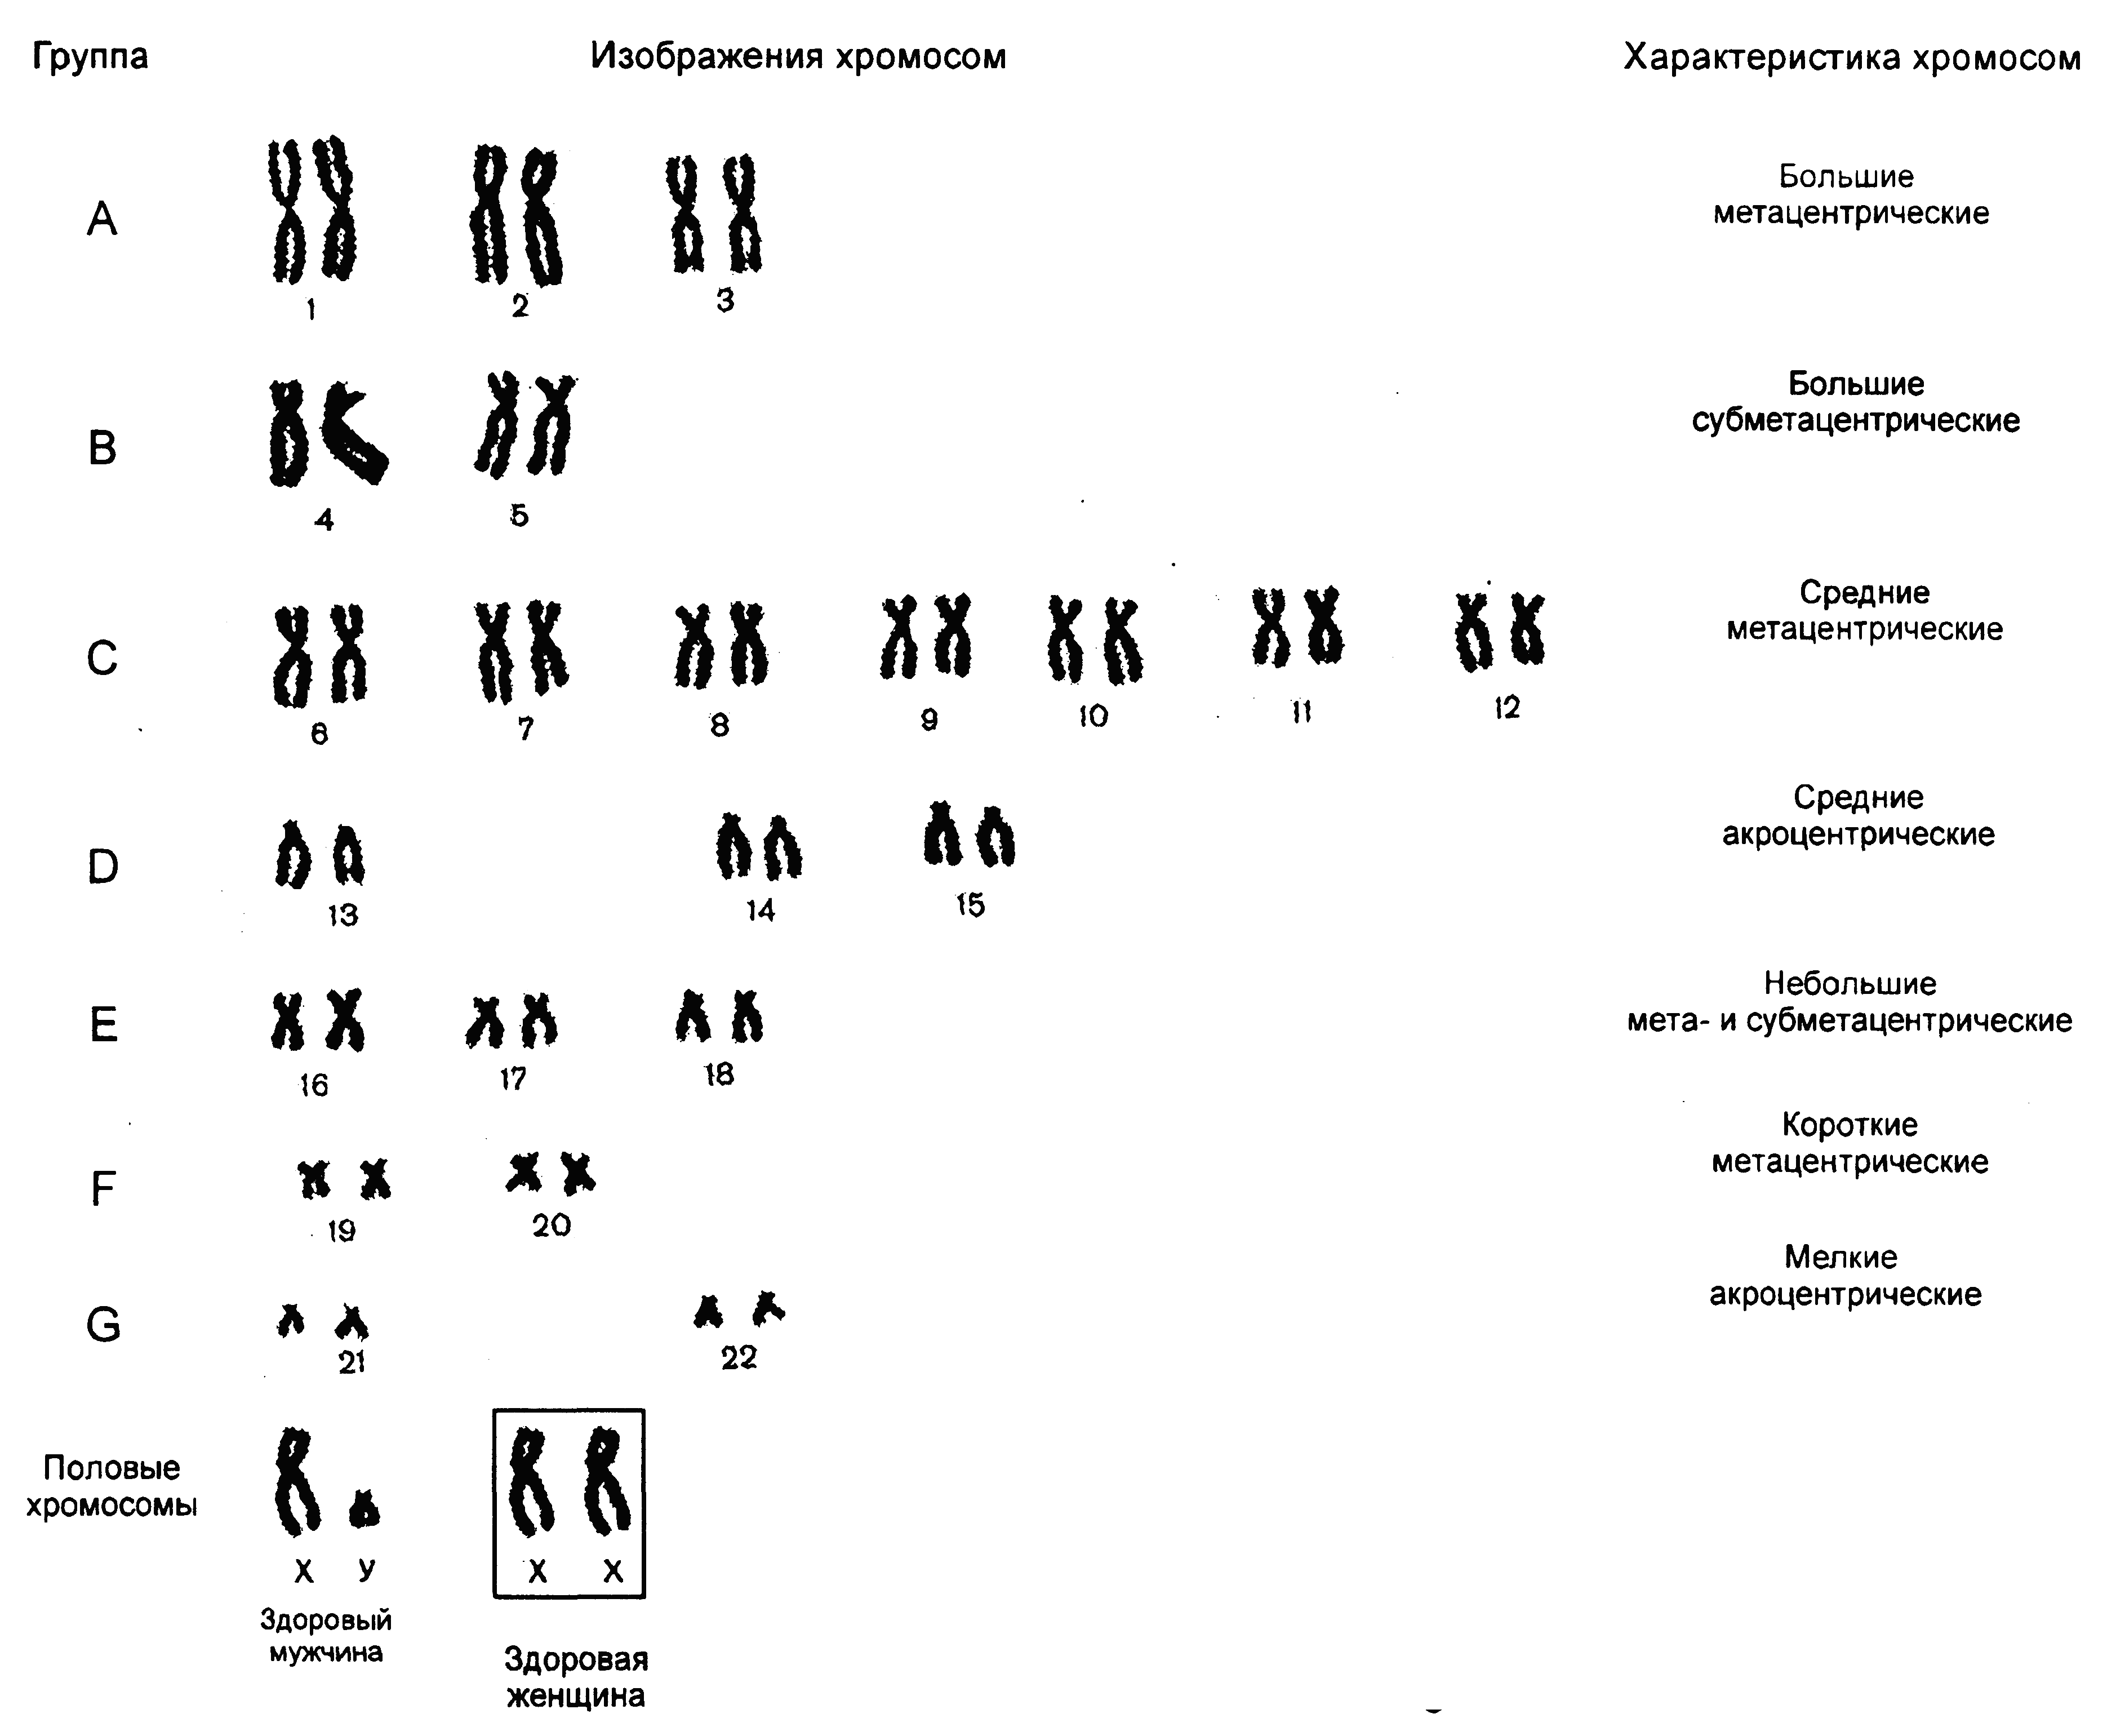 Характеристики хромосом человека